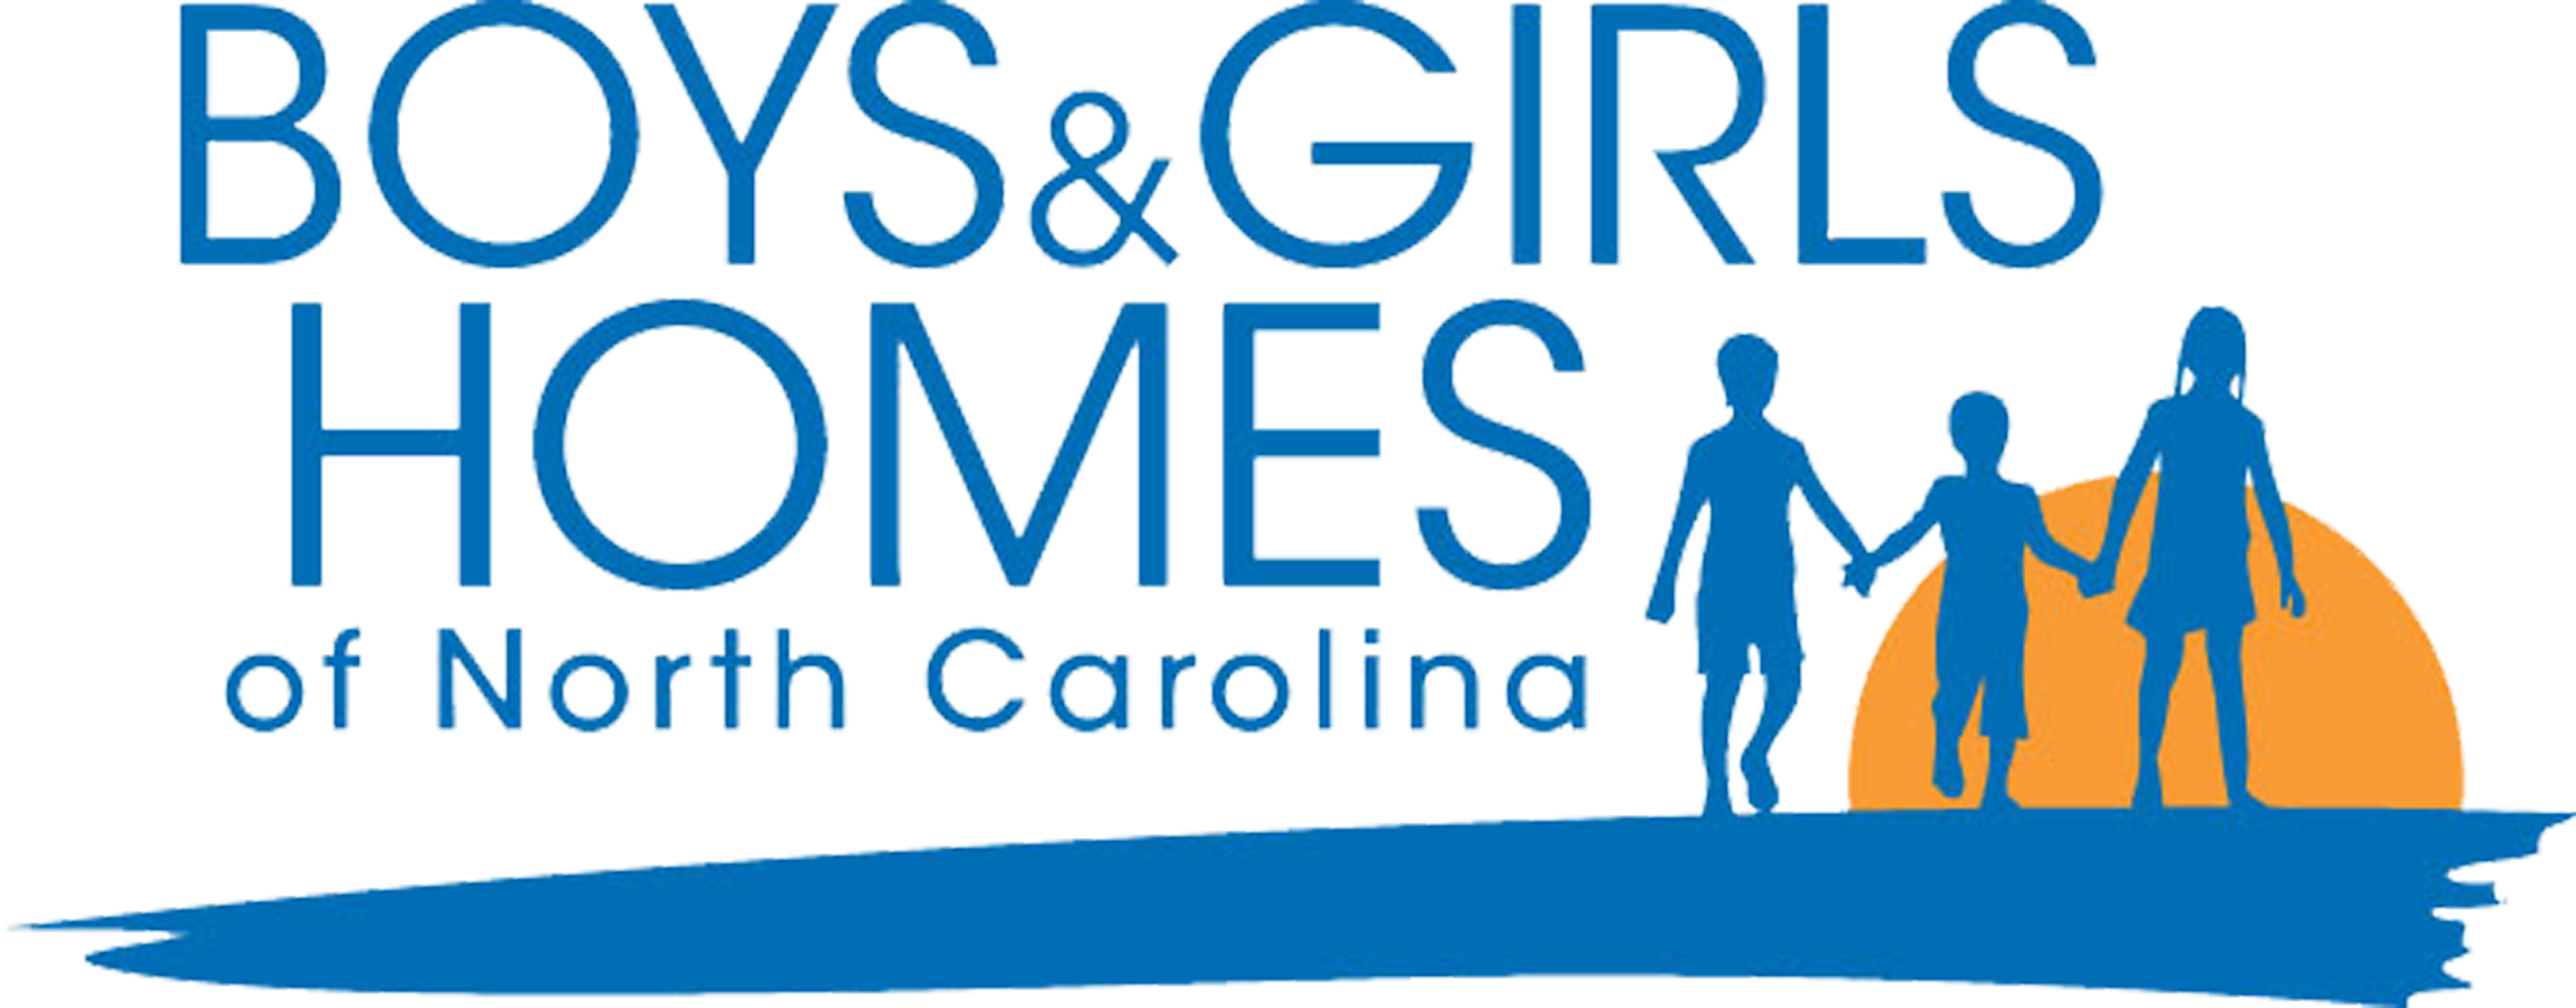 Boys and Girls Homes of North Carolina